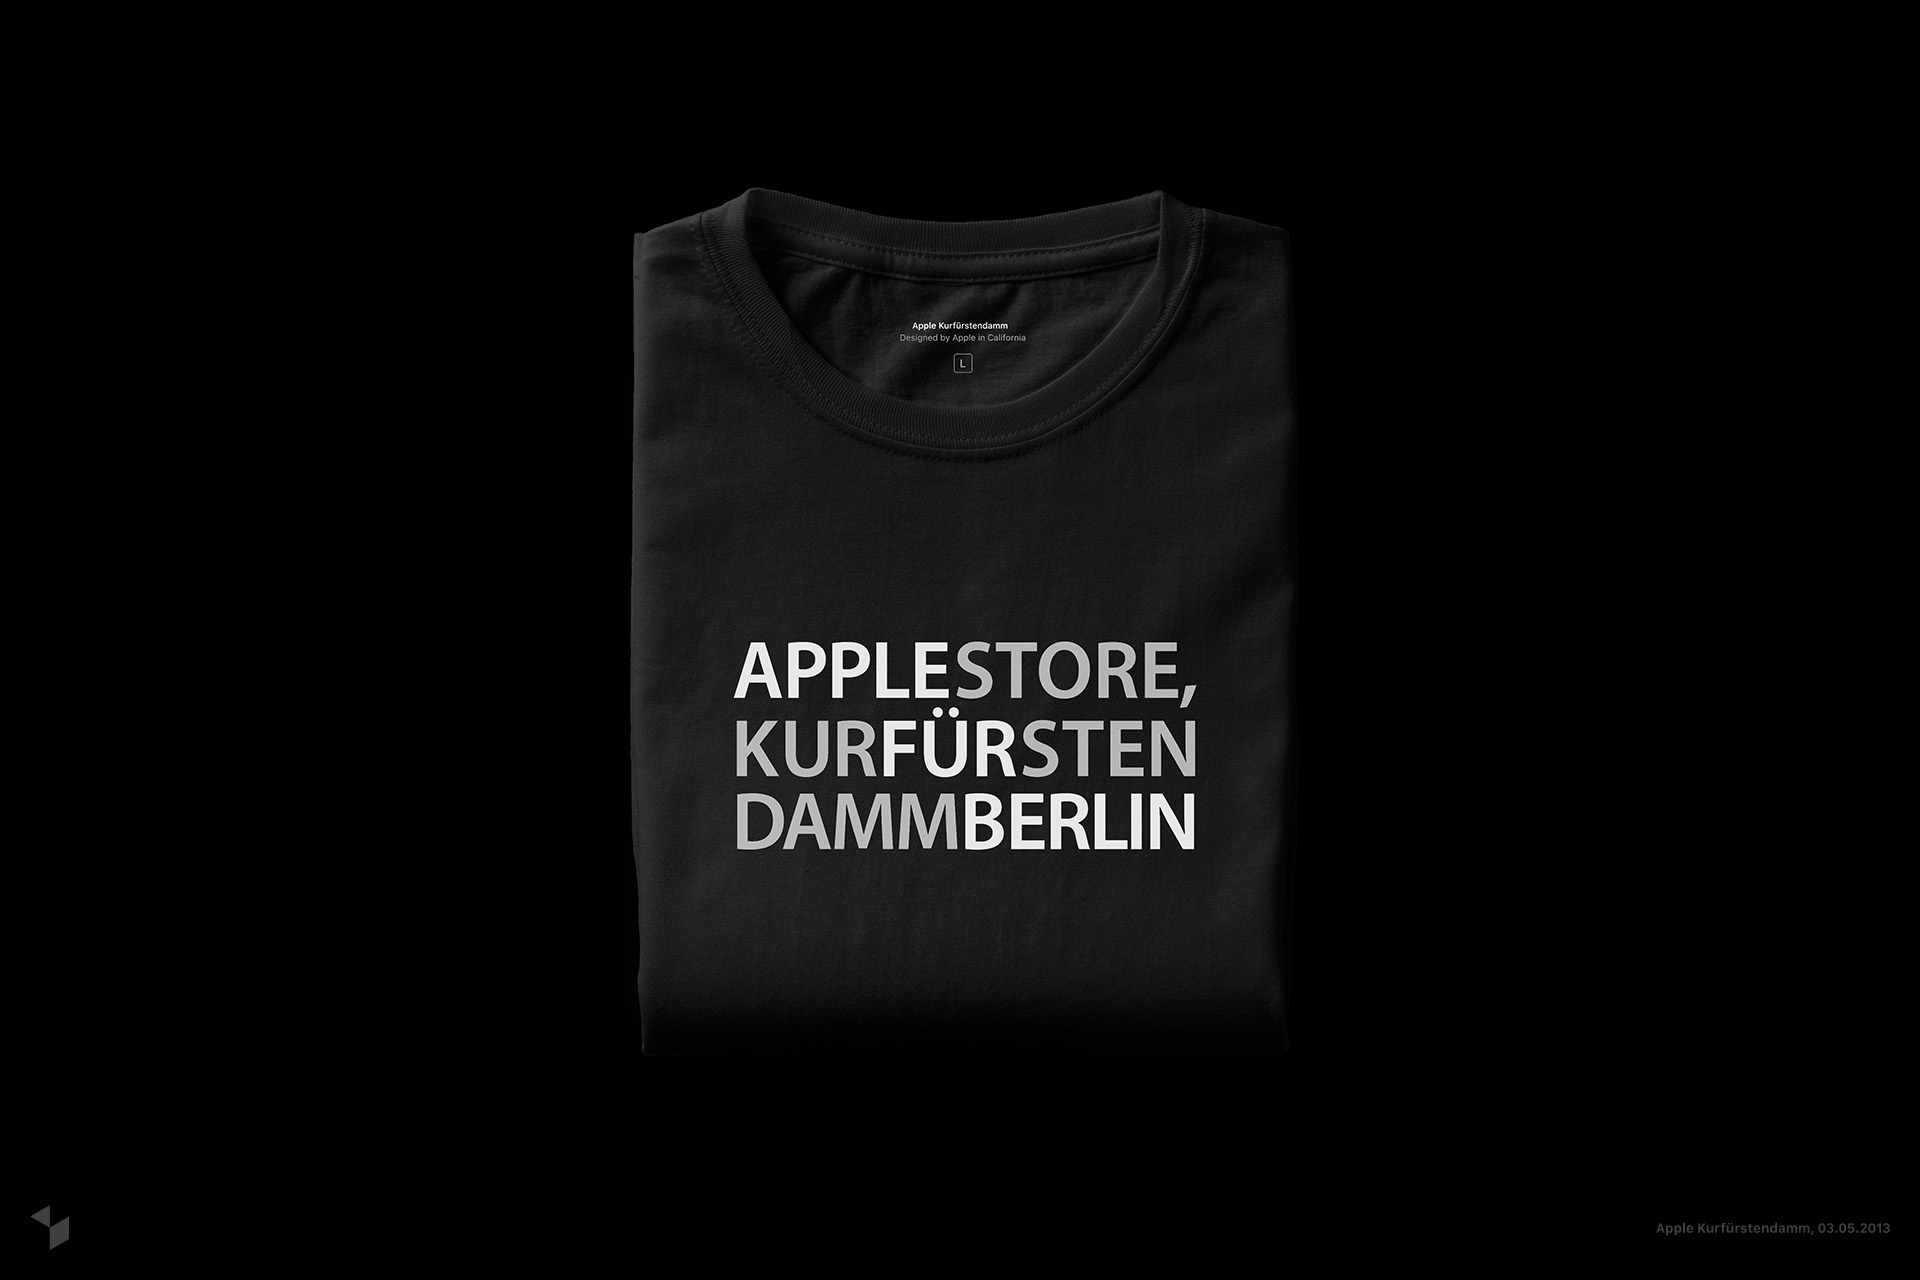 Apple Kurfürstendamm in Berlin (Deutschland) eröffnete am 3. Mai 2013